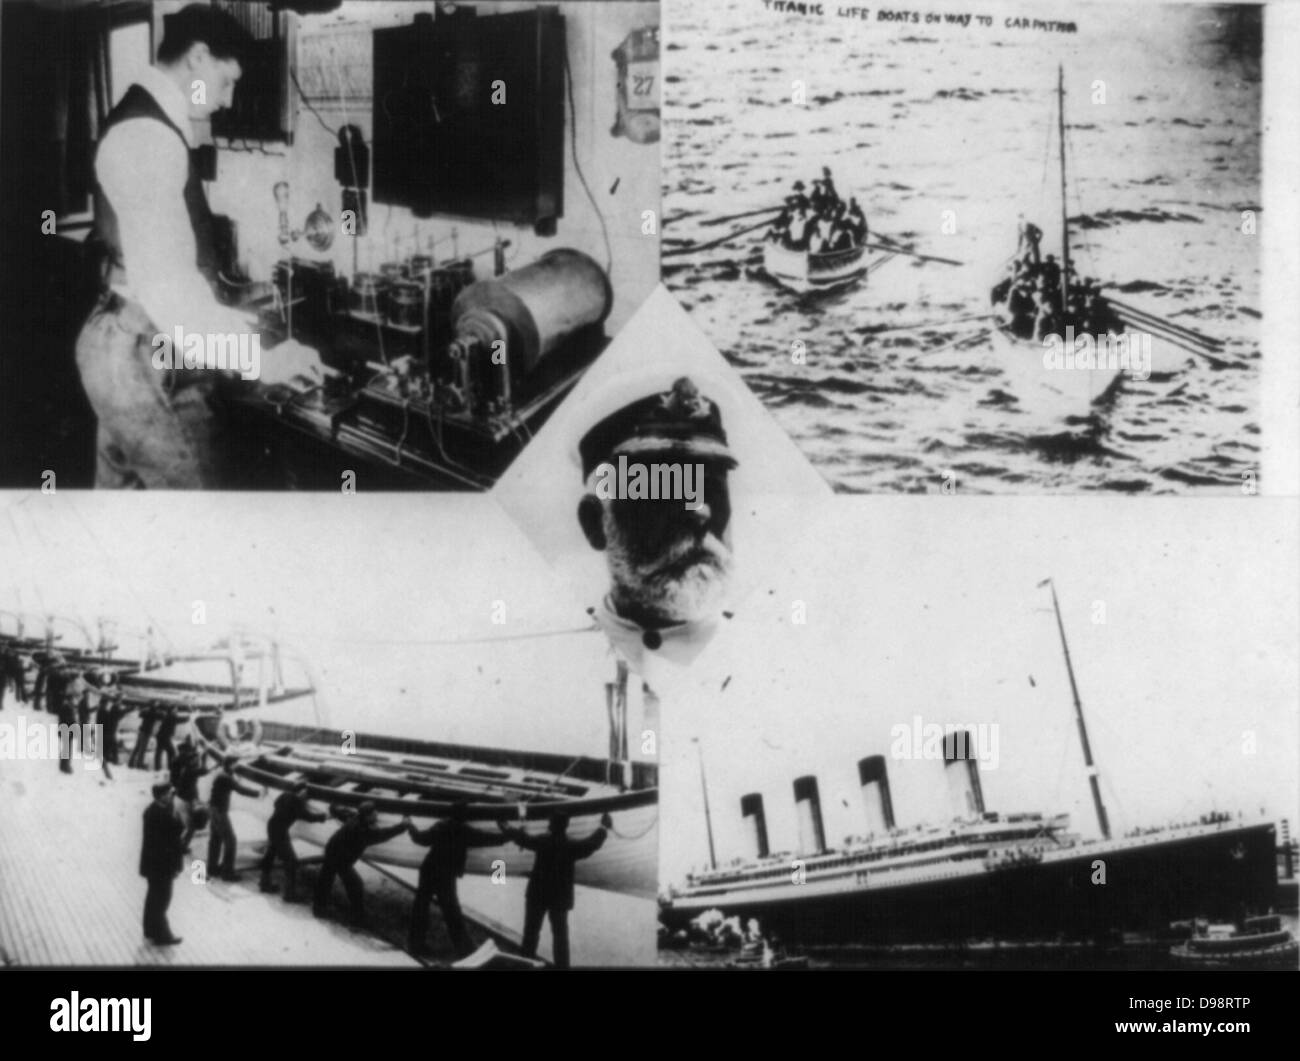 Verlust der RMS Titanic mit einem Eisberg am 12. April 1912 getroffen. Netzbetreiber auf SS Carpathia Notsignal empfangen: Kapitän Smith von der Titanic: Lifboats die Überlebenden auf das CARPATHIA. Schiffbruch Disaster Stockfoto